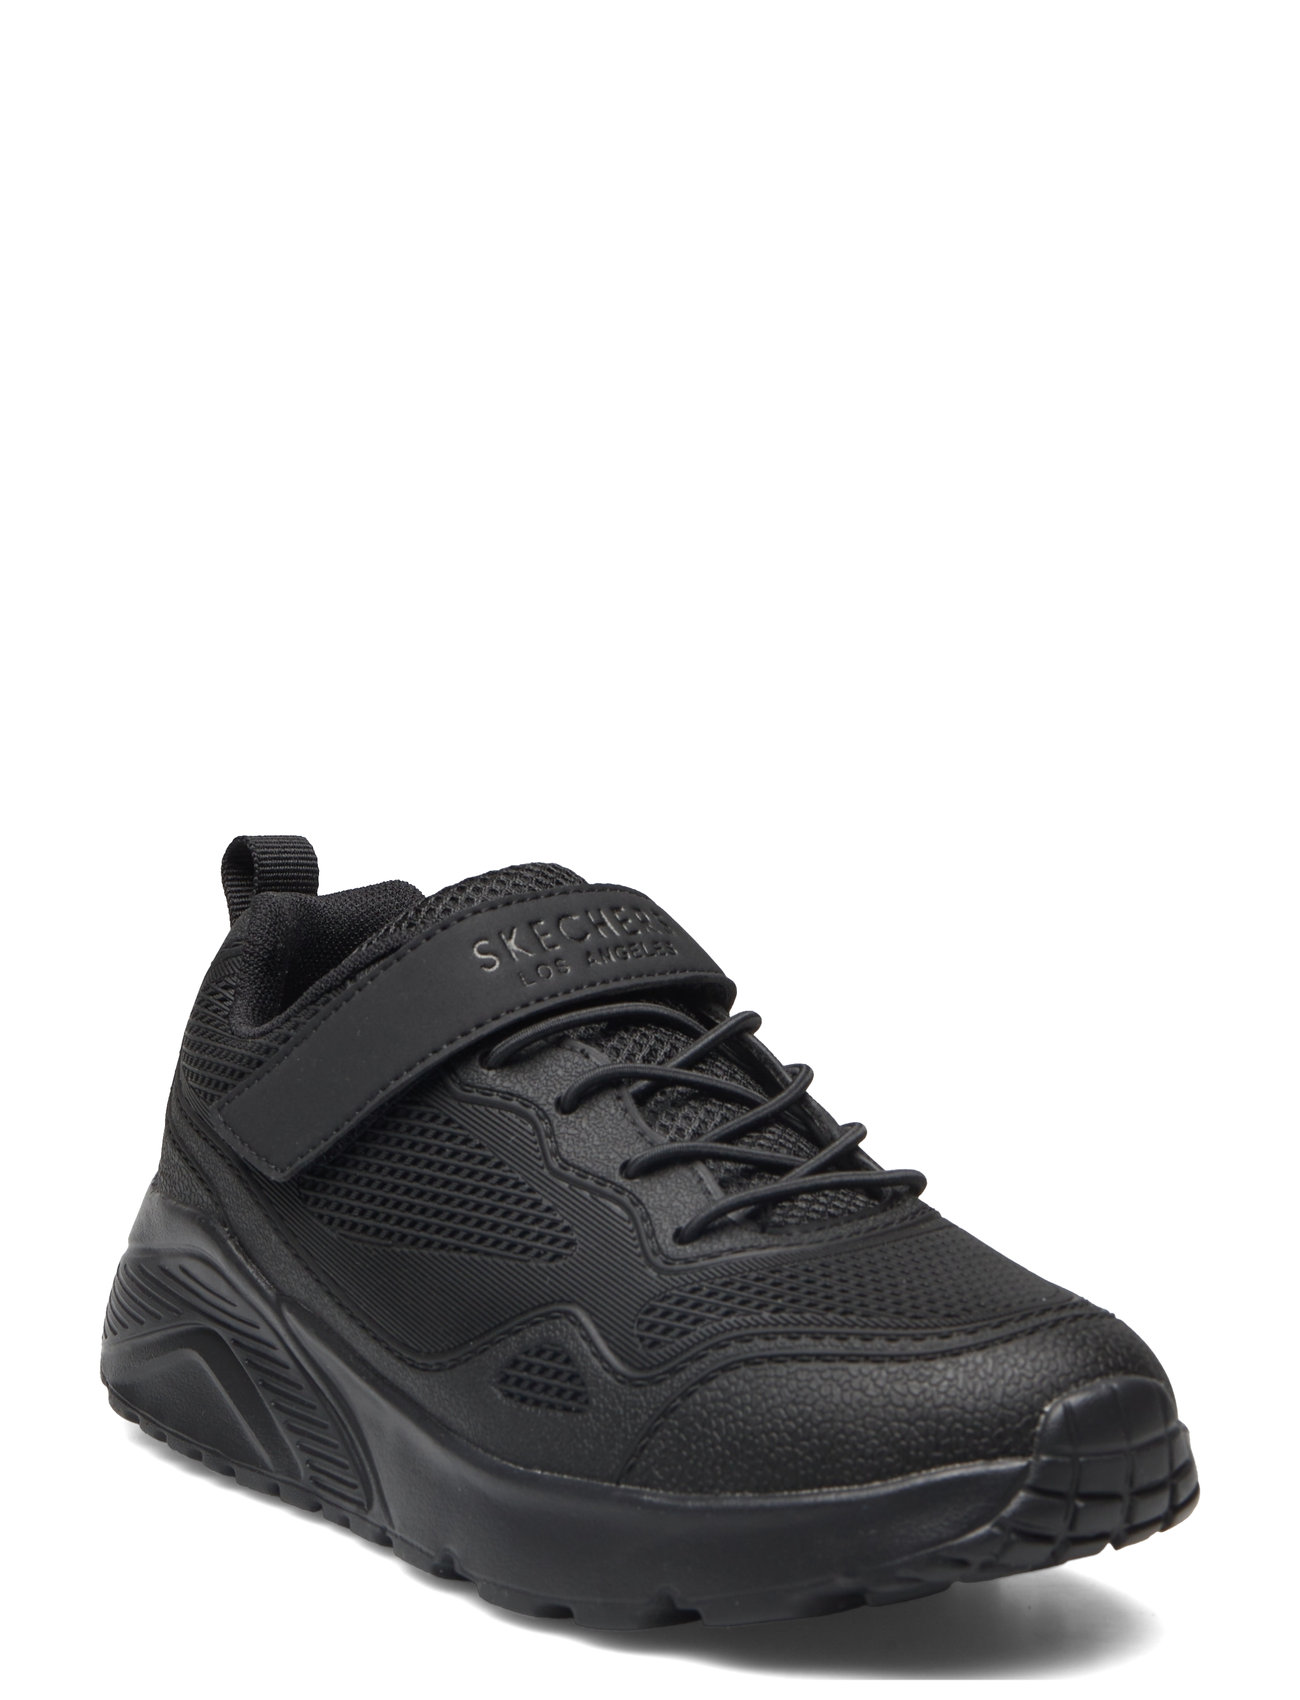 Boys Uno Lite Low-top Sneakers Black Skechers